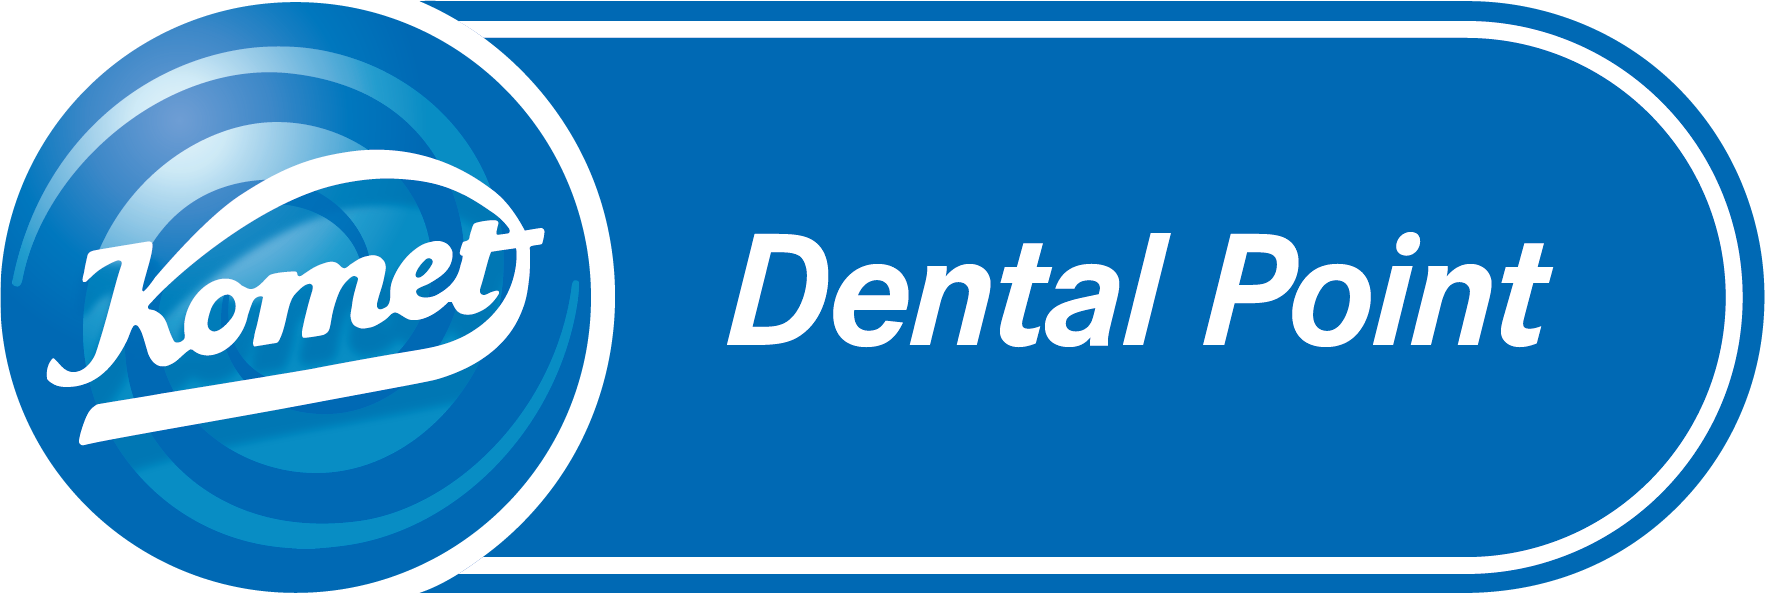 KOM-logo_DentalPoint_CMYK.png